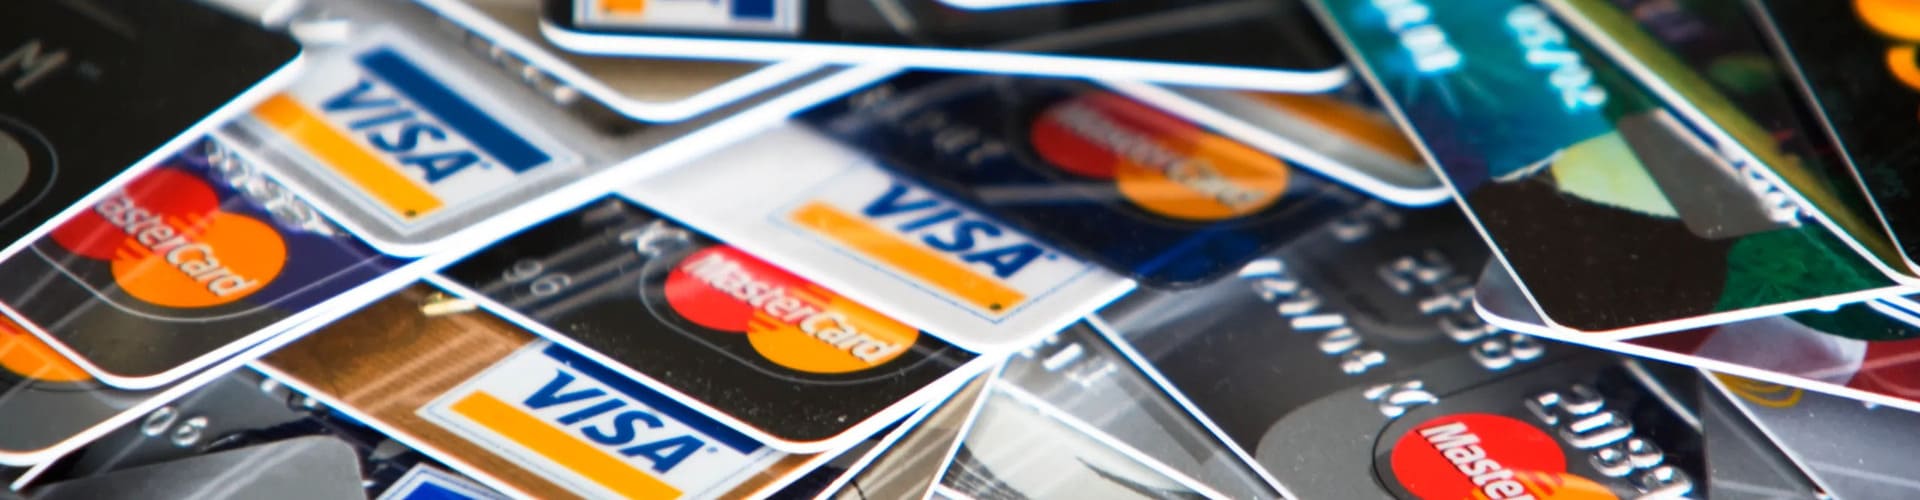 Kreditkort365.se listar alla kreditkort